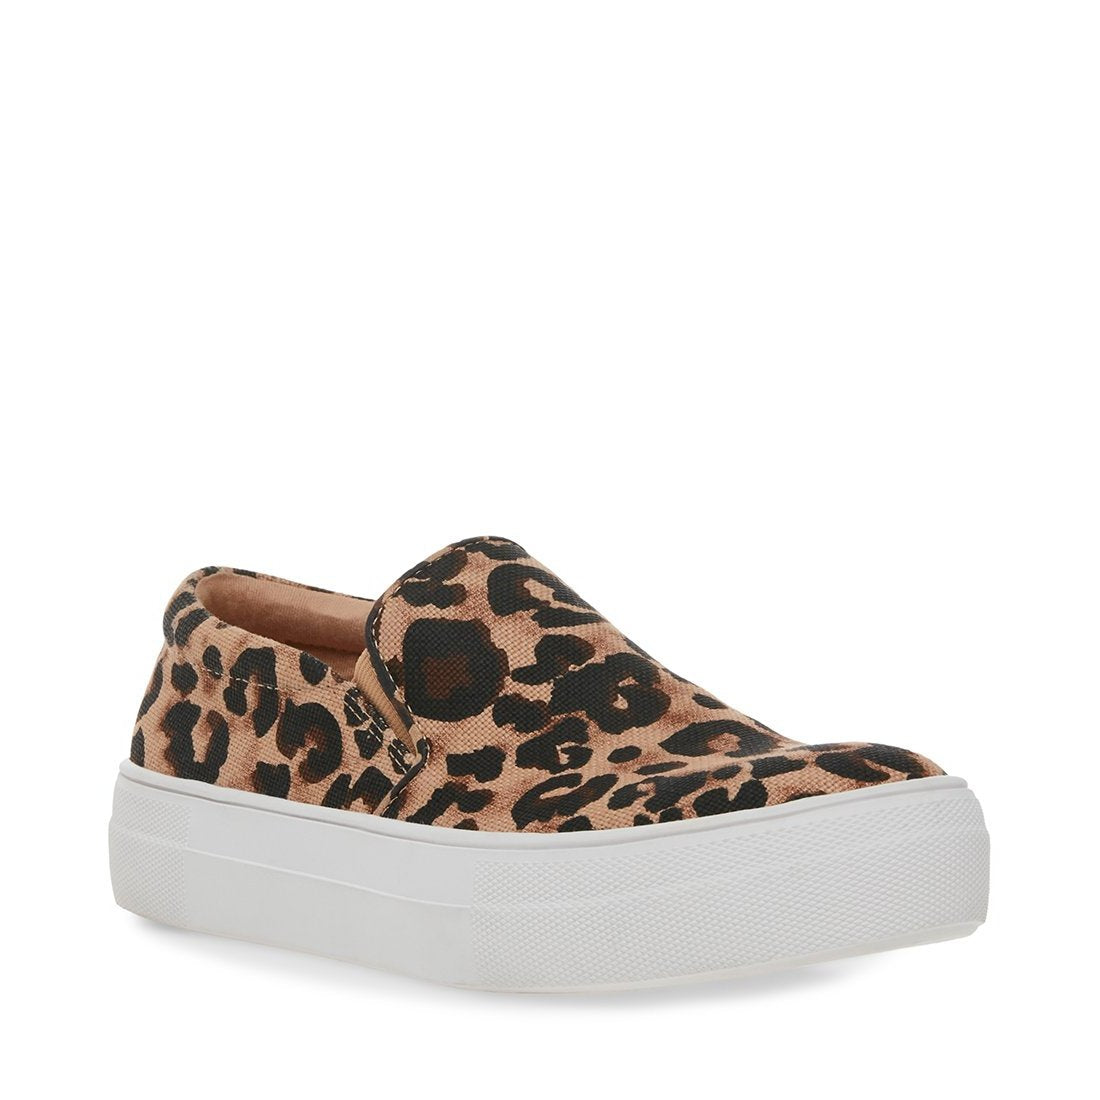 steve madden cheetah slip on shoes